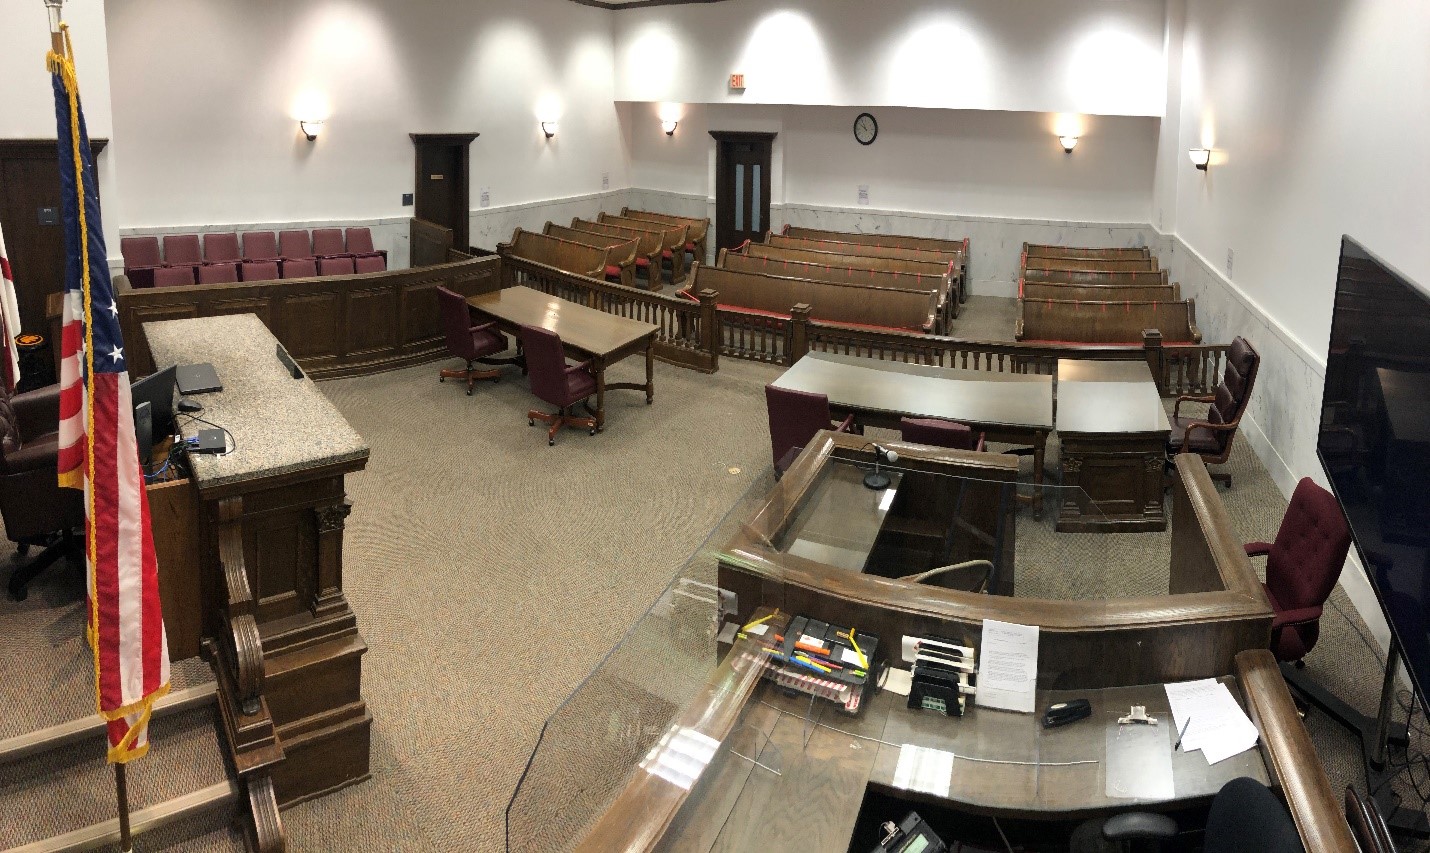 Courtroom Number 5